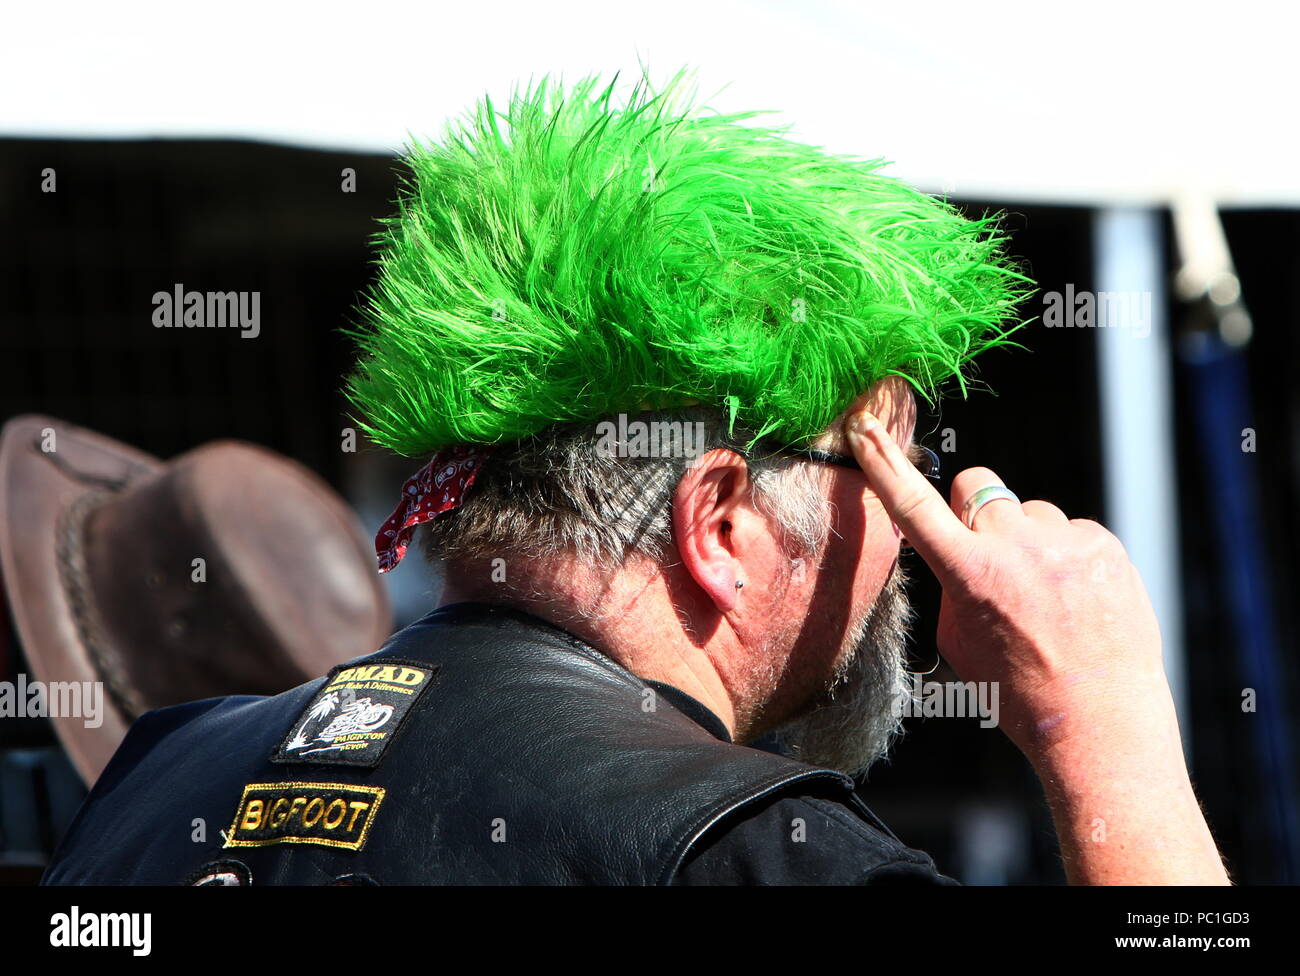 Paignton, Devon, Angleterre: Photo anonyme d'un motard avec une perruque verte faisant un geste du doigt vers son temple. À utiliser comme un concept, c'est-à-dire « utiliser votre cerveau » ? Banque D'Images